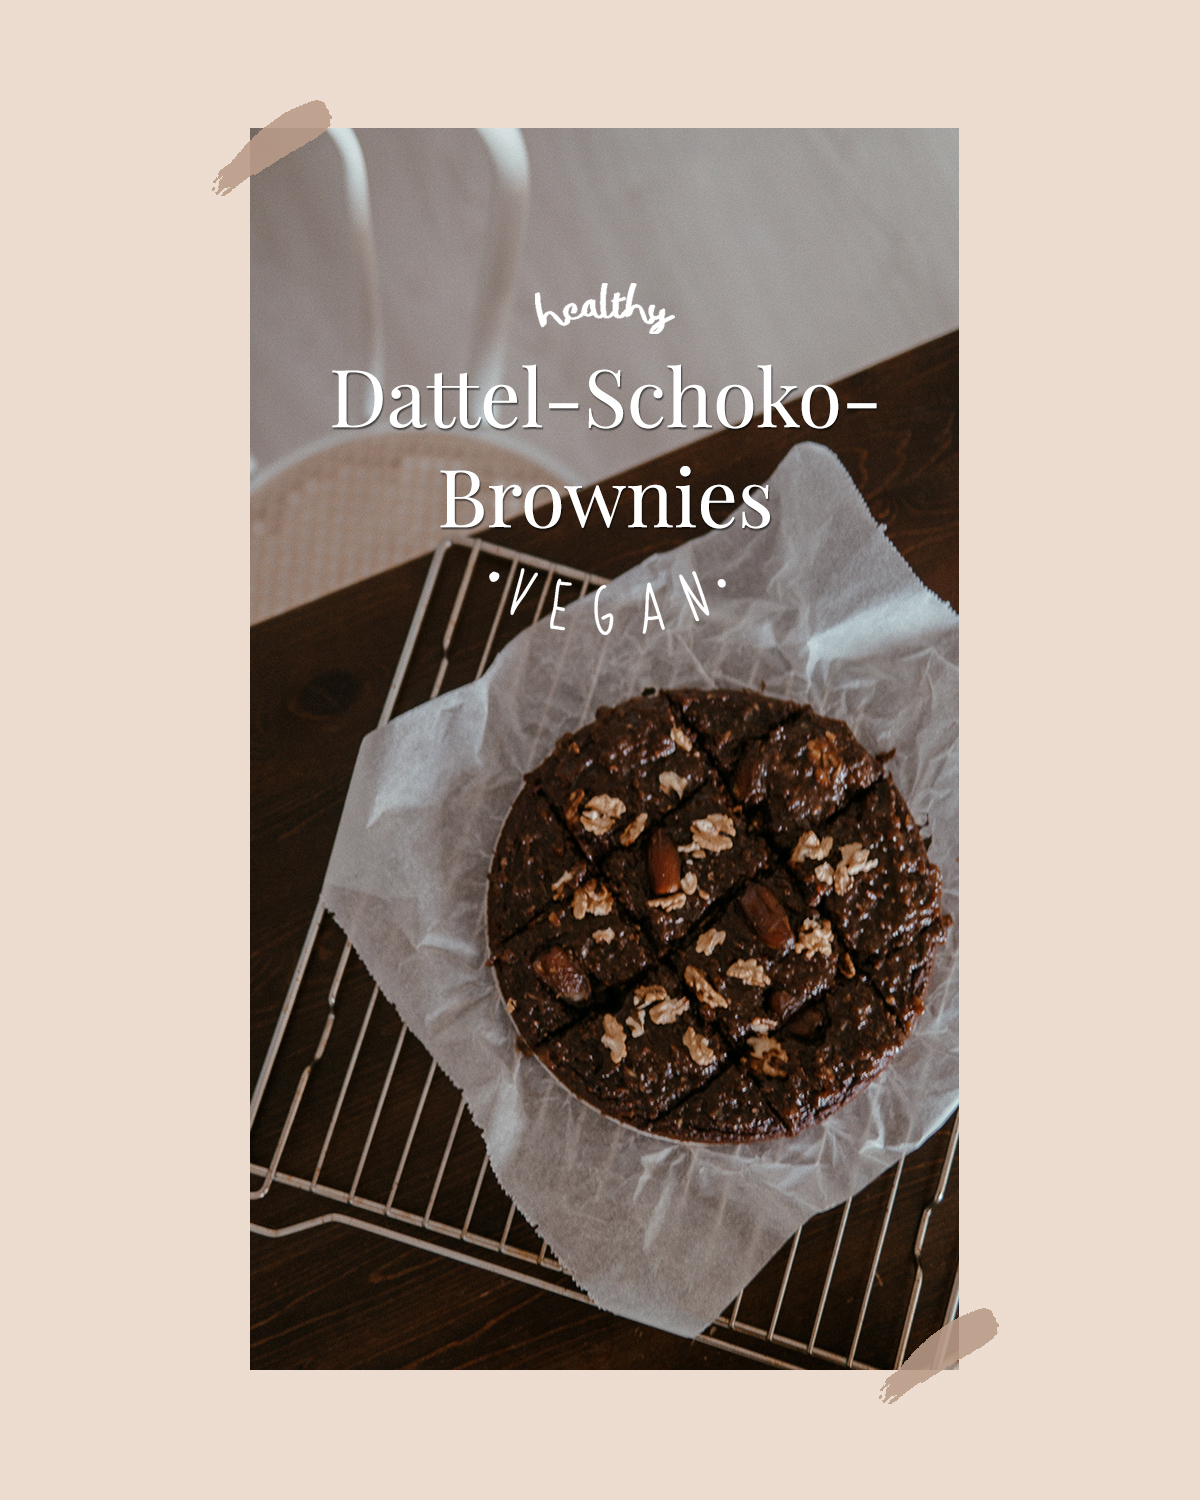 Dattel-Schoko-Brownies - the ladies.